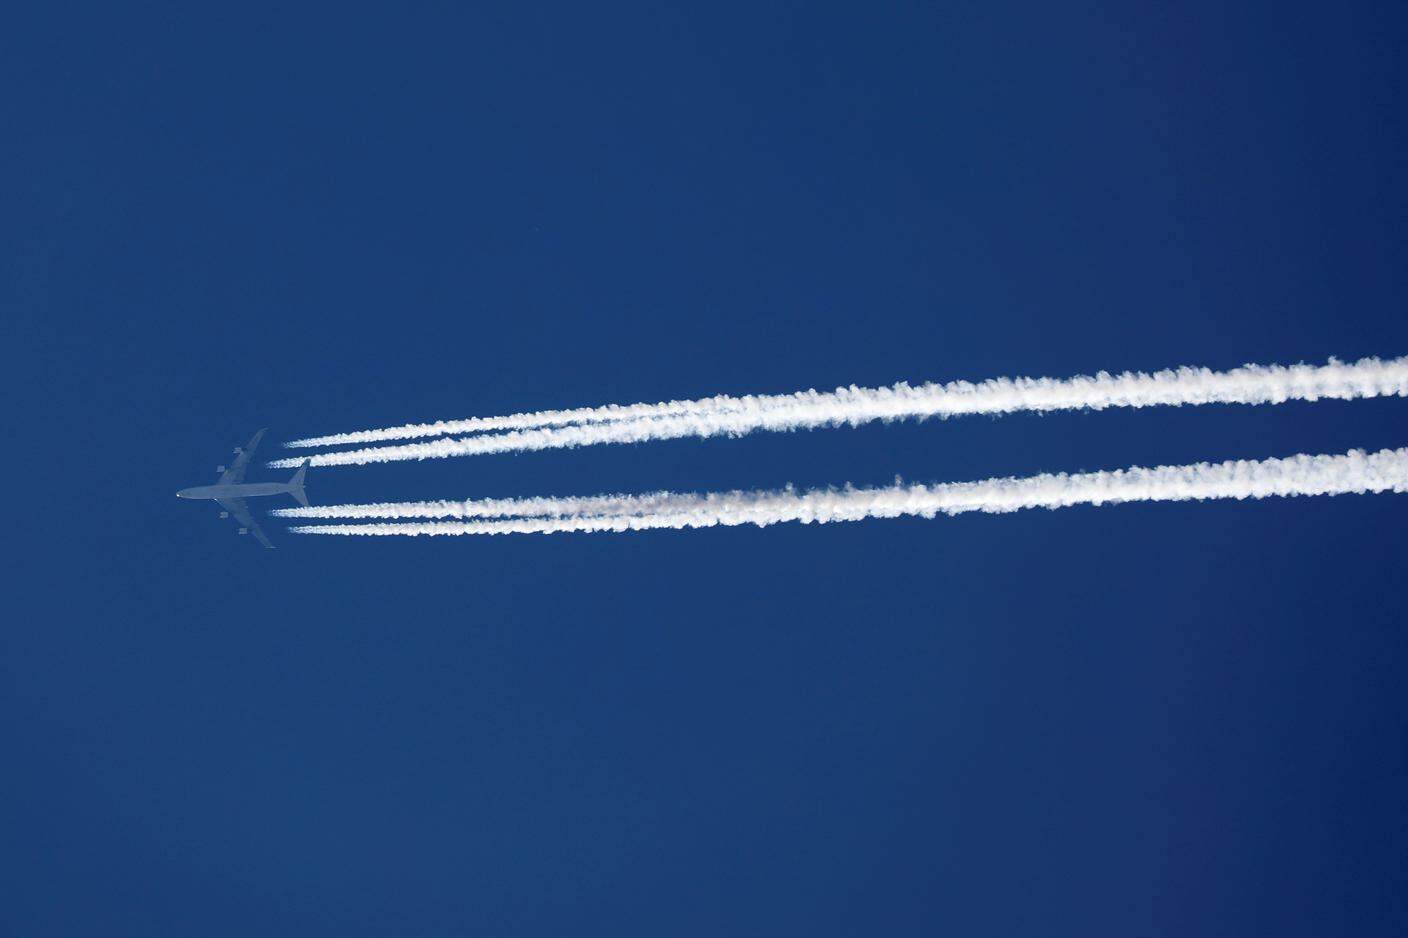 Scie di condensazione prodotte da un aereo in quota: il procedimento ideato in Svizzera consente di ridurre drasticamente il particolato che le genera